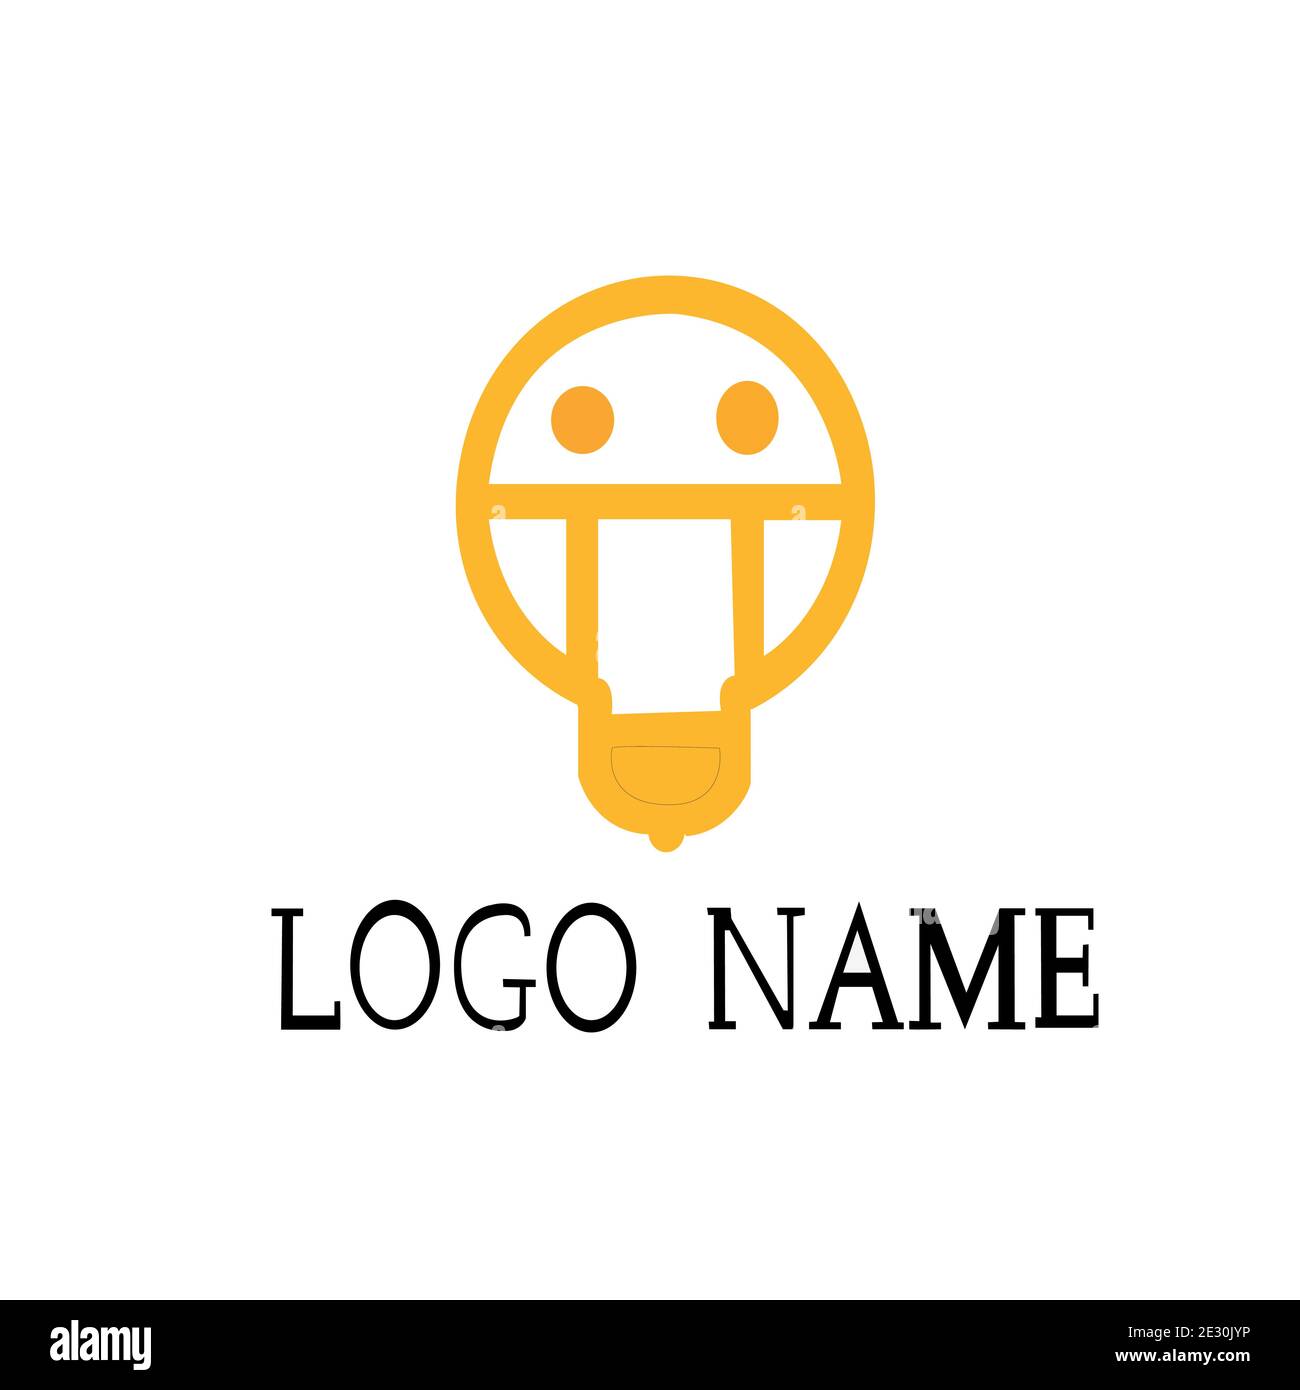 Disegno vettoriale del logo dell'imprenditore per l'uomo d'affari Illustrazione Vettoriale